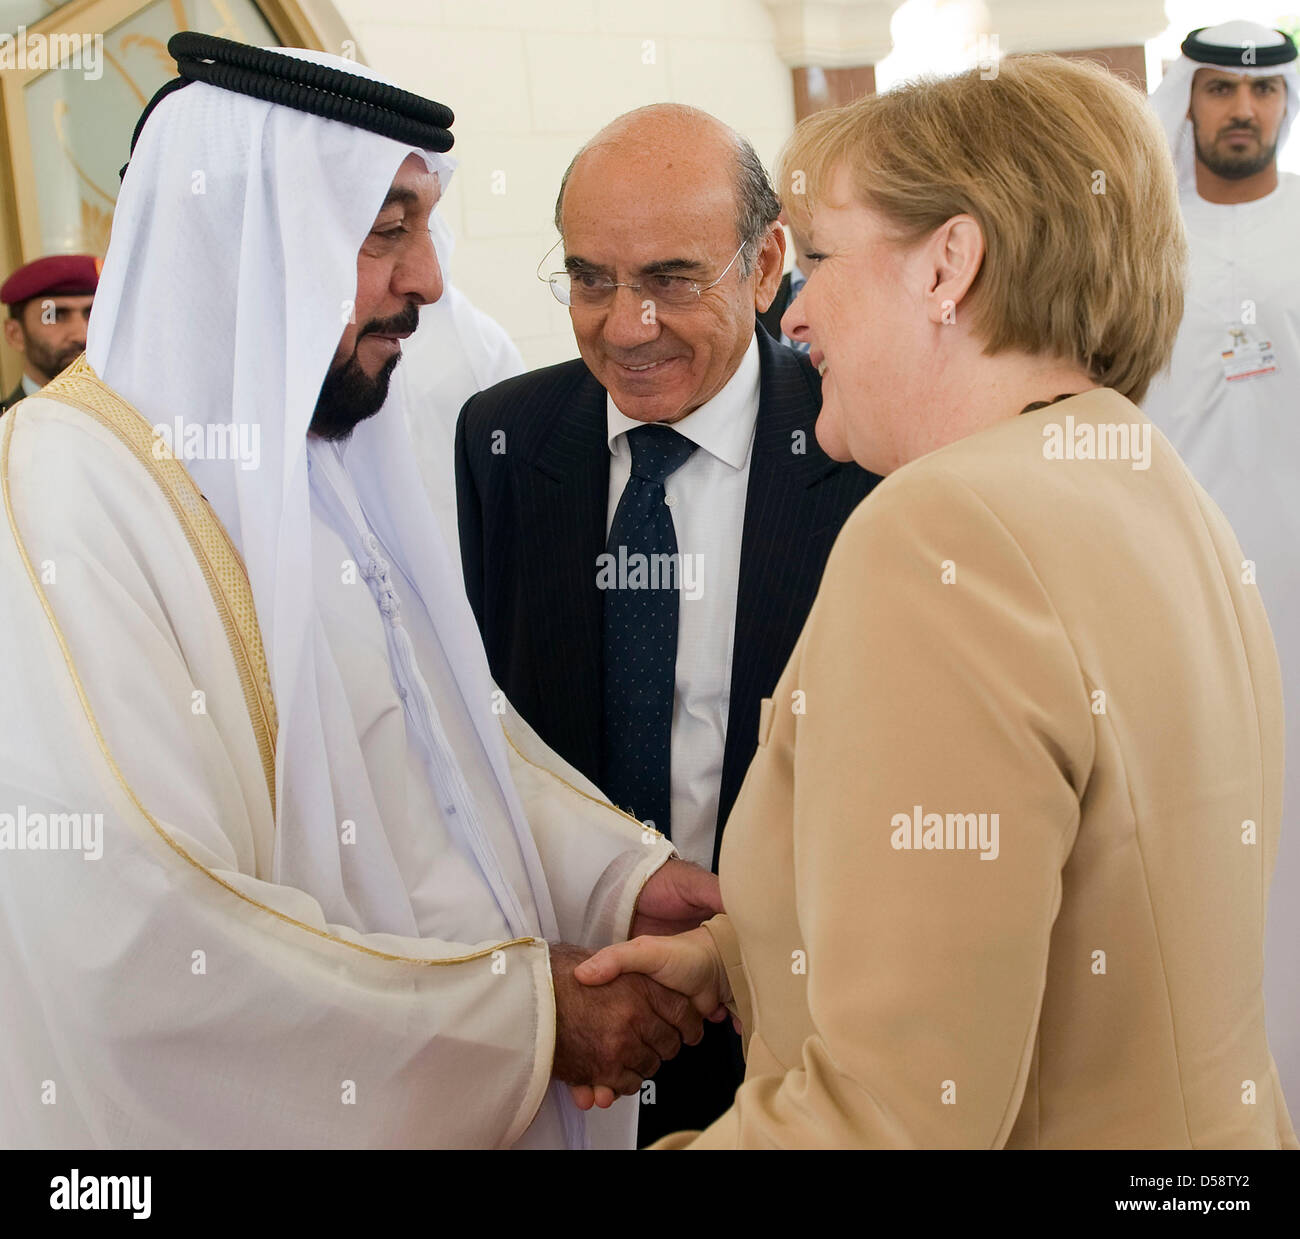 La chancelière allemande, Angela Merkel, est accueilli par le président des EAU, Cheikh Khalifa bin Zayed Al Nahyan (L) dans l'Al Mushrif Palace du Président à Abu Dhabi, Emirats arabes unis (EAU), 25 mai 2010. Merkel se rendra dans quatre des six pays du Conseil de coopération du Golfe jusqu'au 27 mai 2010 pour améliorer les liens économiques et politiques. Poto : Bundesregierung / Bergmann Banque D'Images